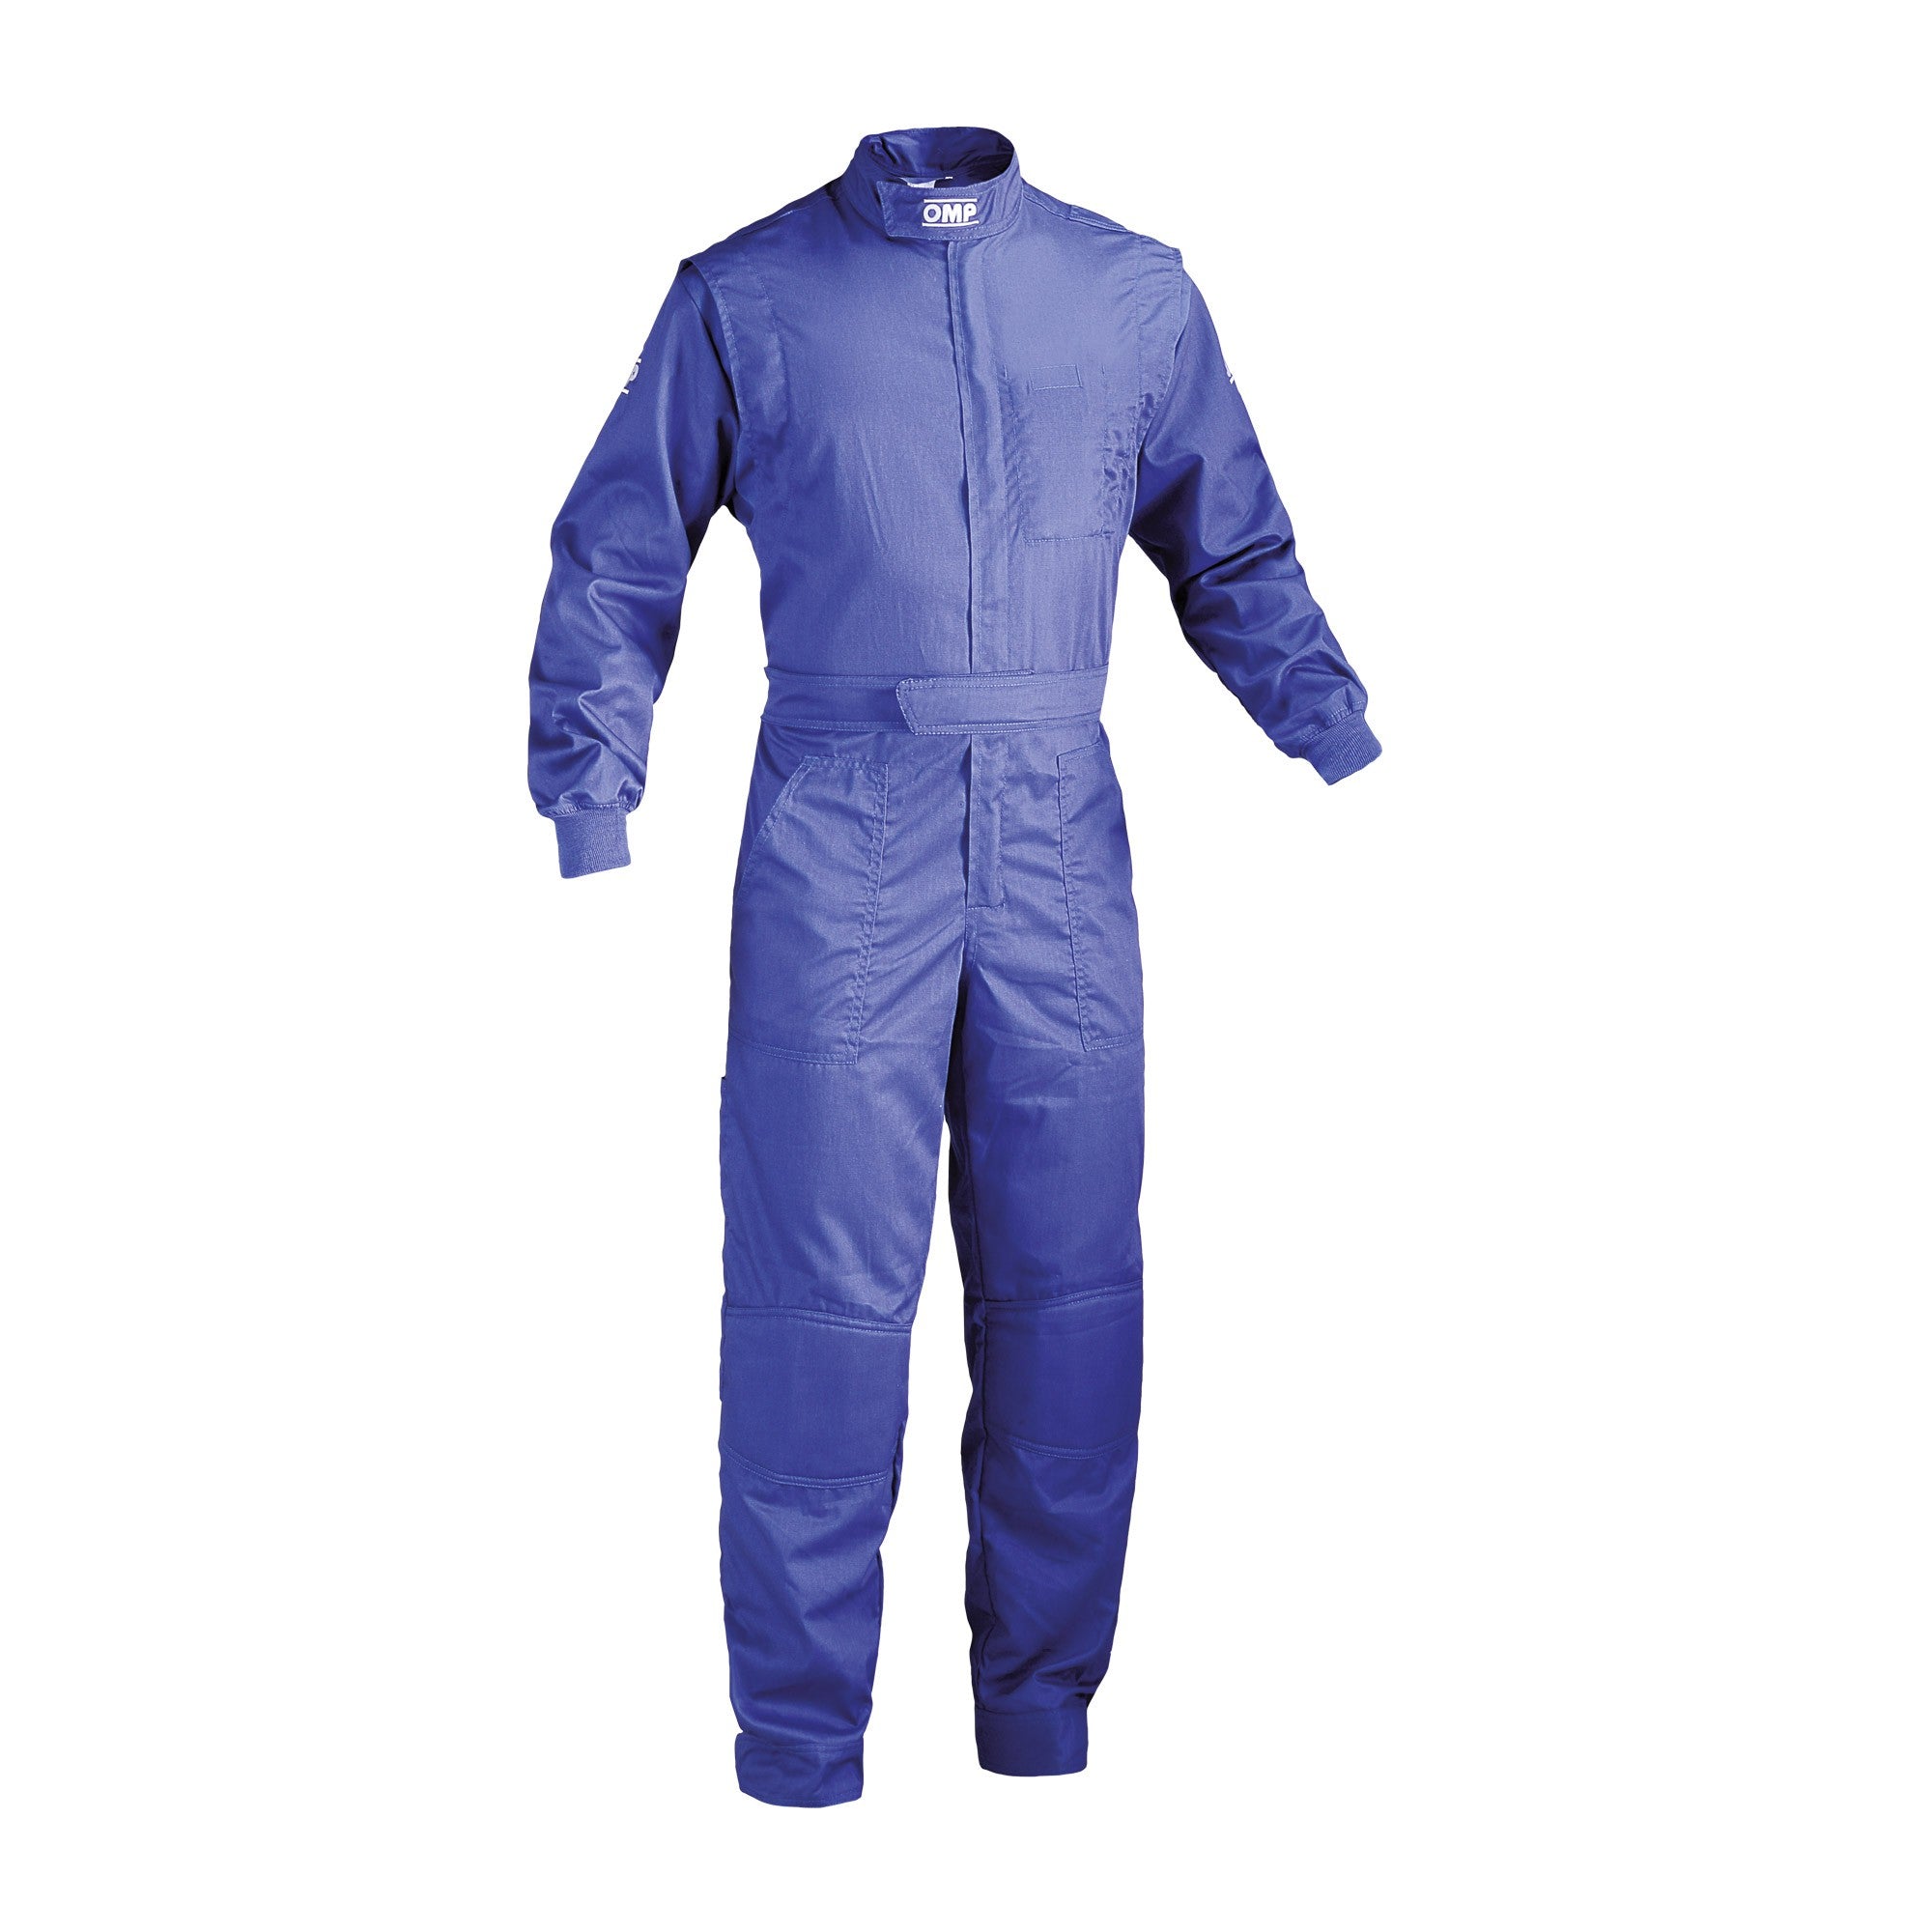 OMP NB0-1579-A01-041-46 (NB157904146) Mechanic suit SUMMER, blue, size 46 Photo-0 